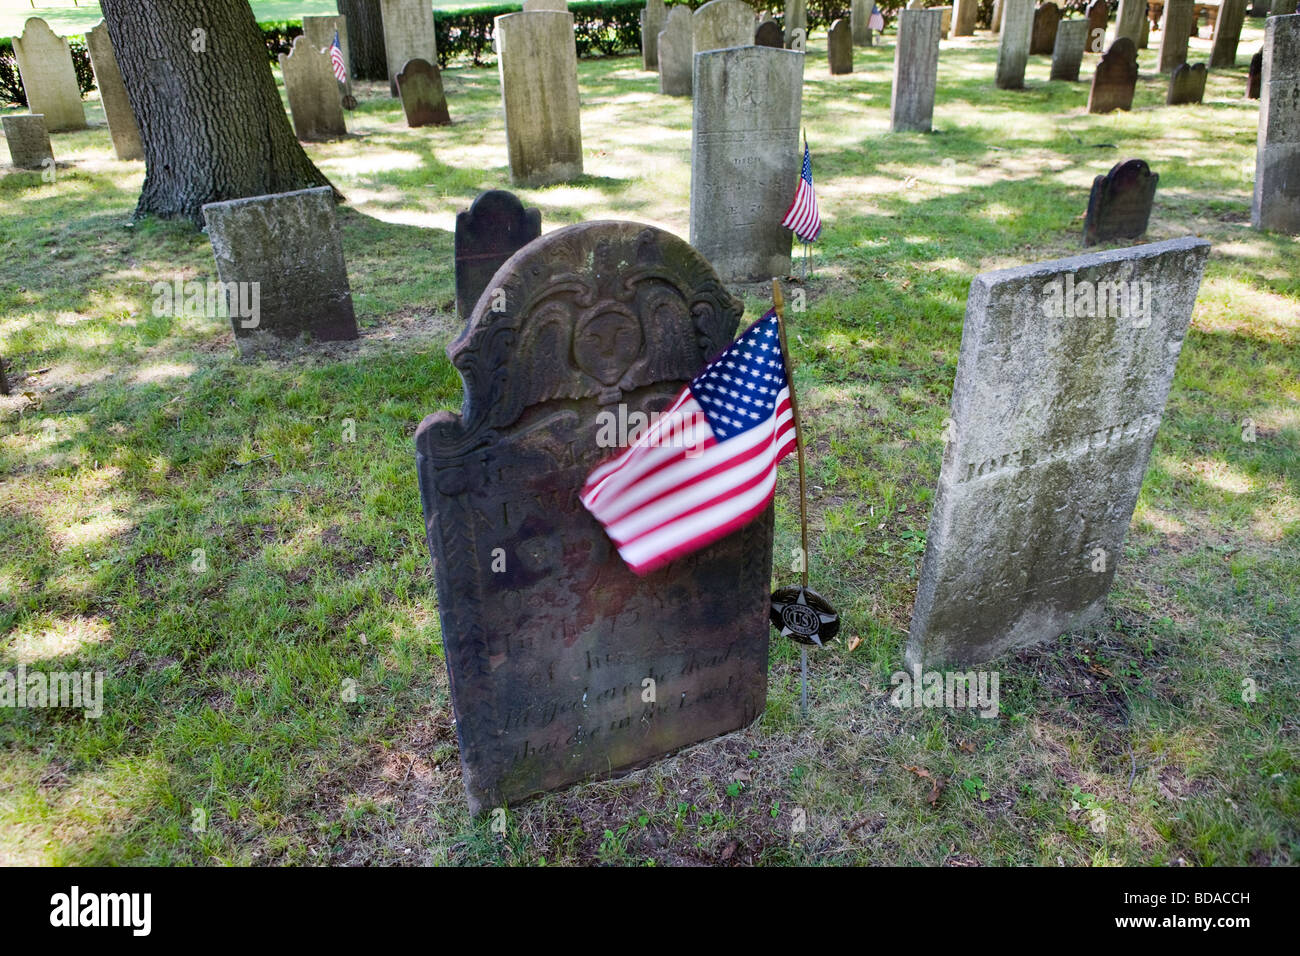 Alte Grabsteine. Grabsteine aus dem späten 1700 und frühen 1800 in North Haven CT USA Stockfoto